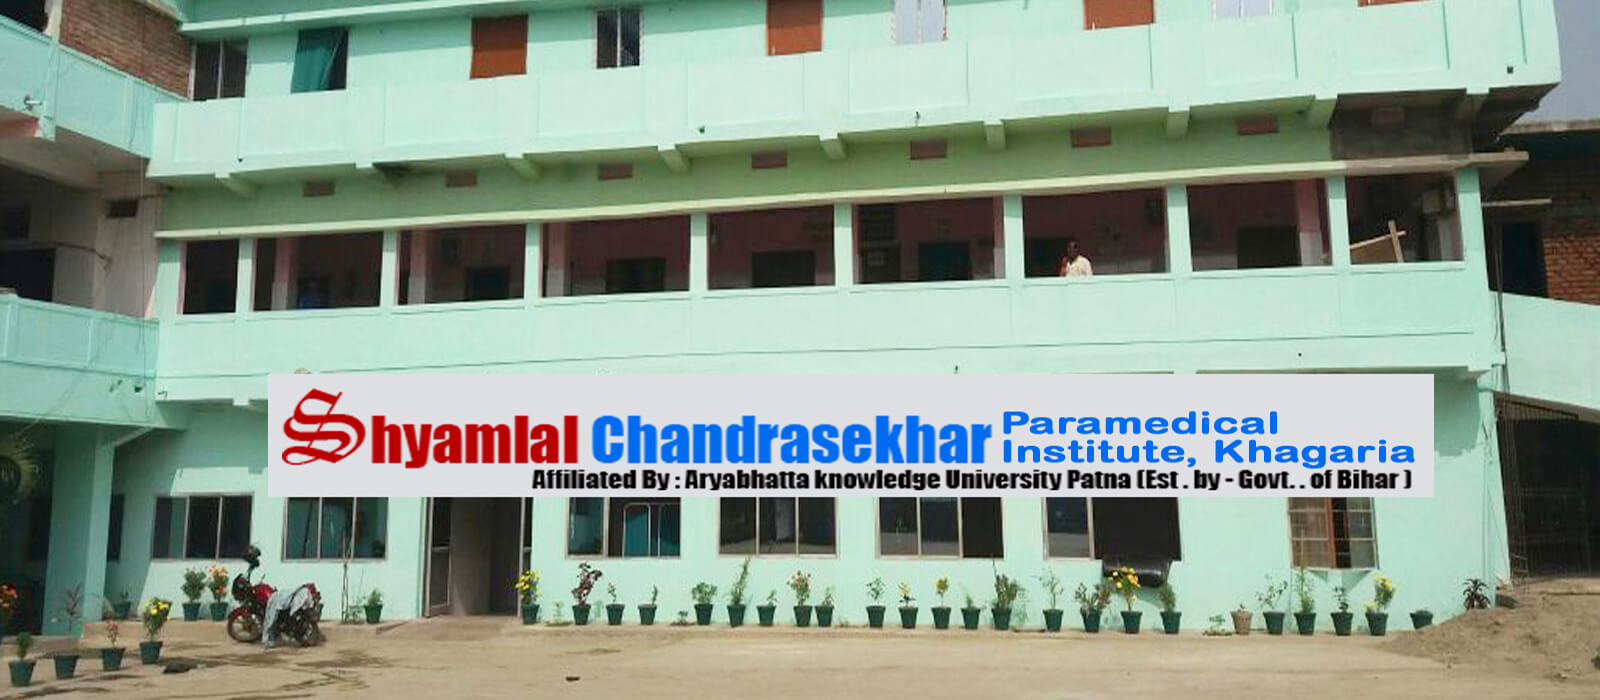 Shyamlal Chandrasekhar Paramedical Institute, Khagaria